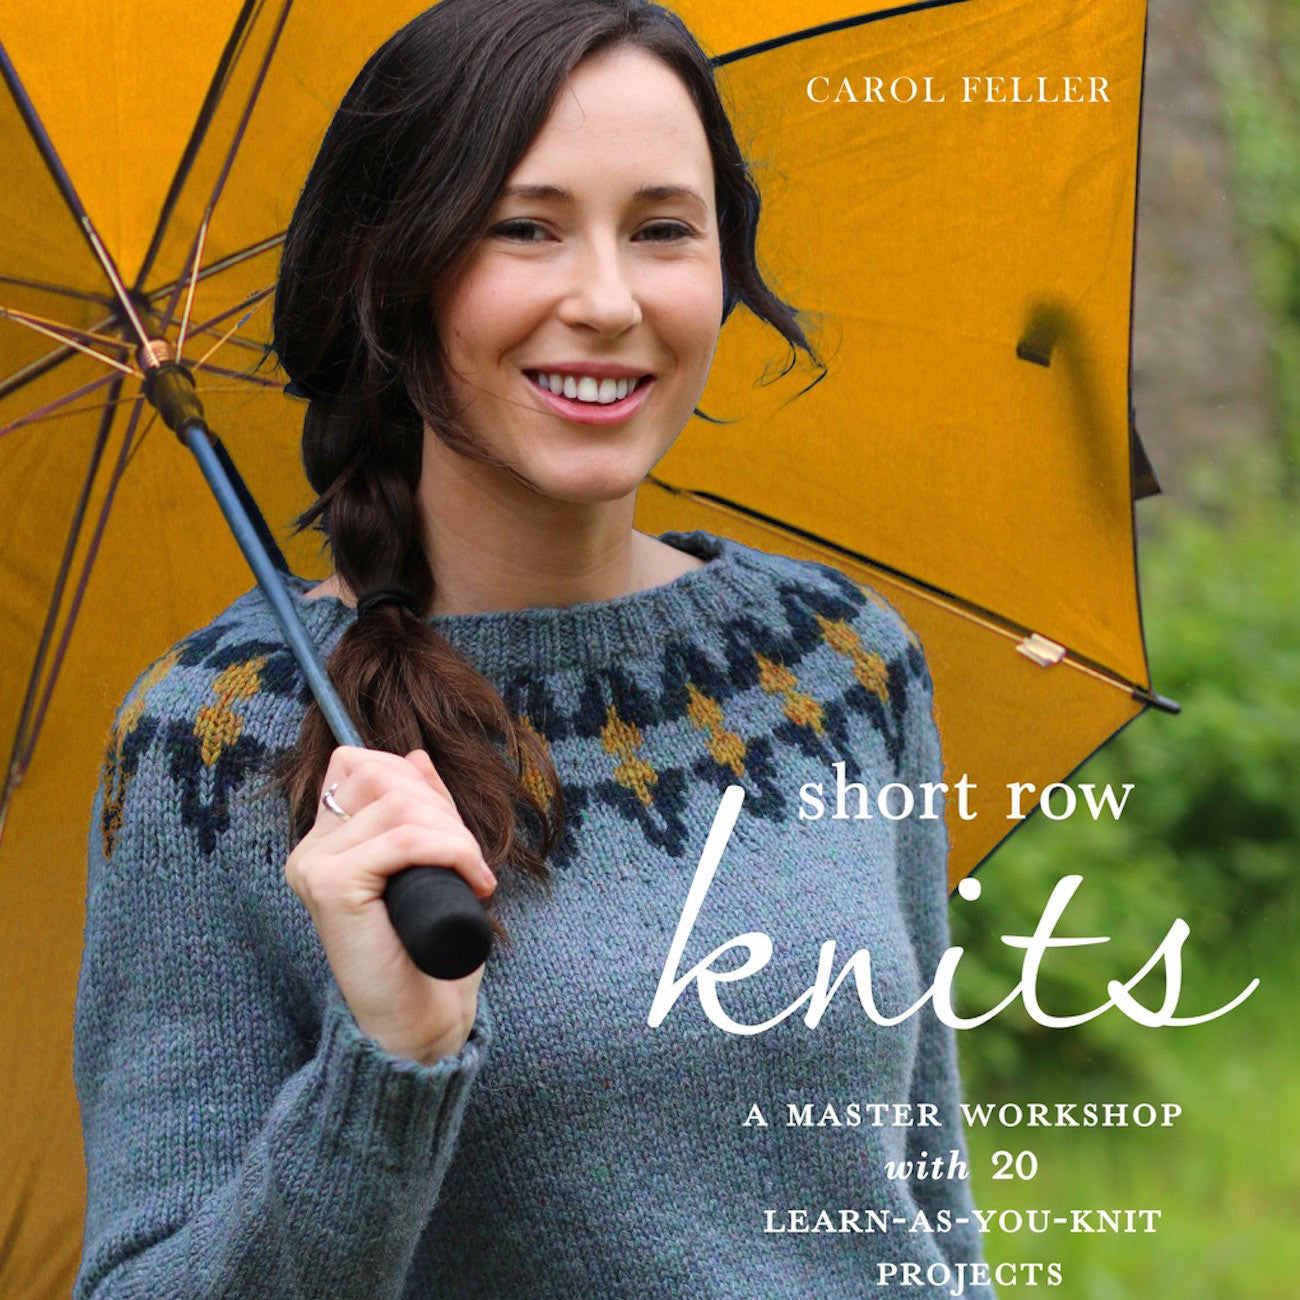 Knitting for kids – Carol Feller